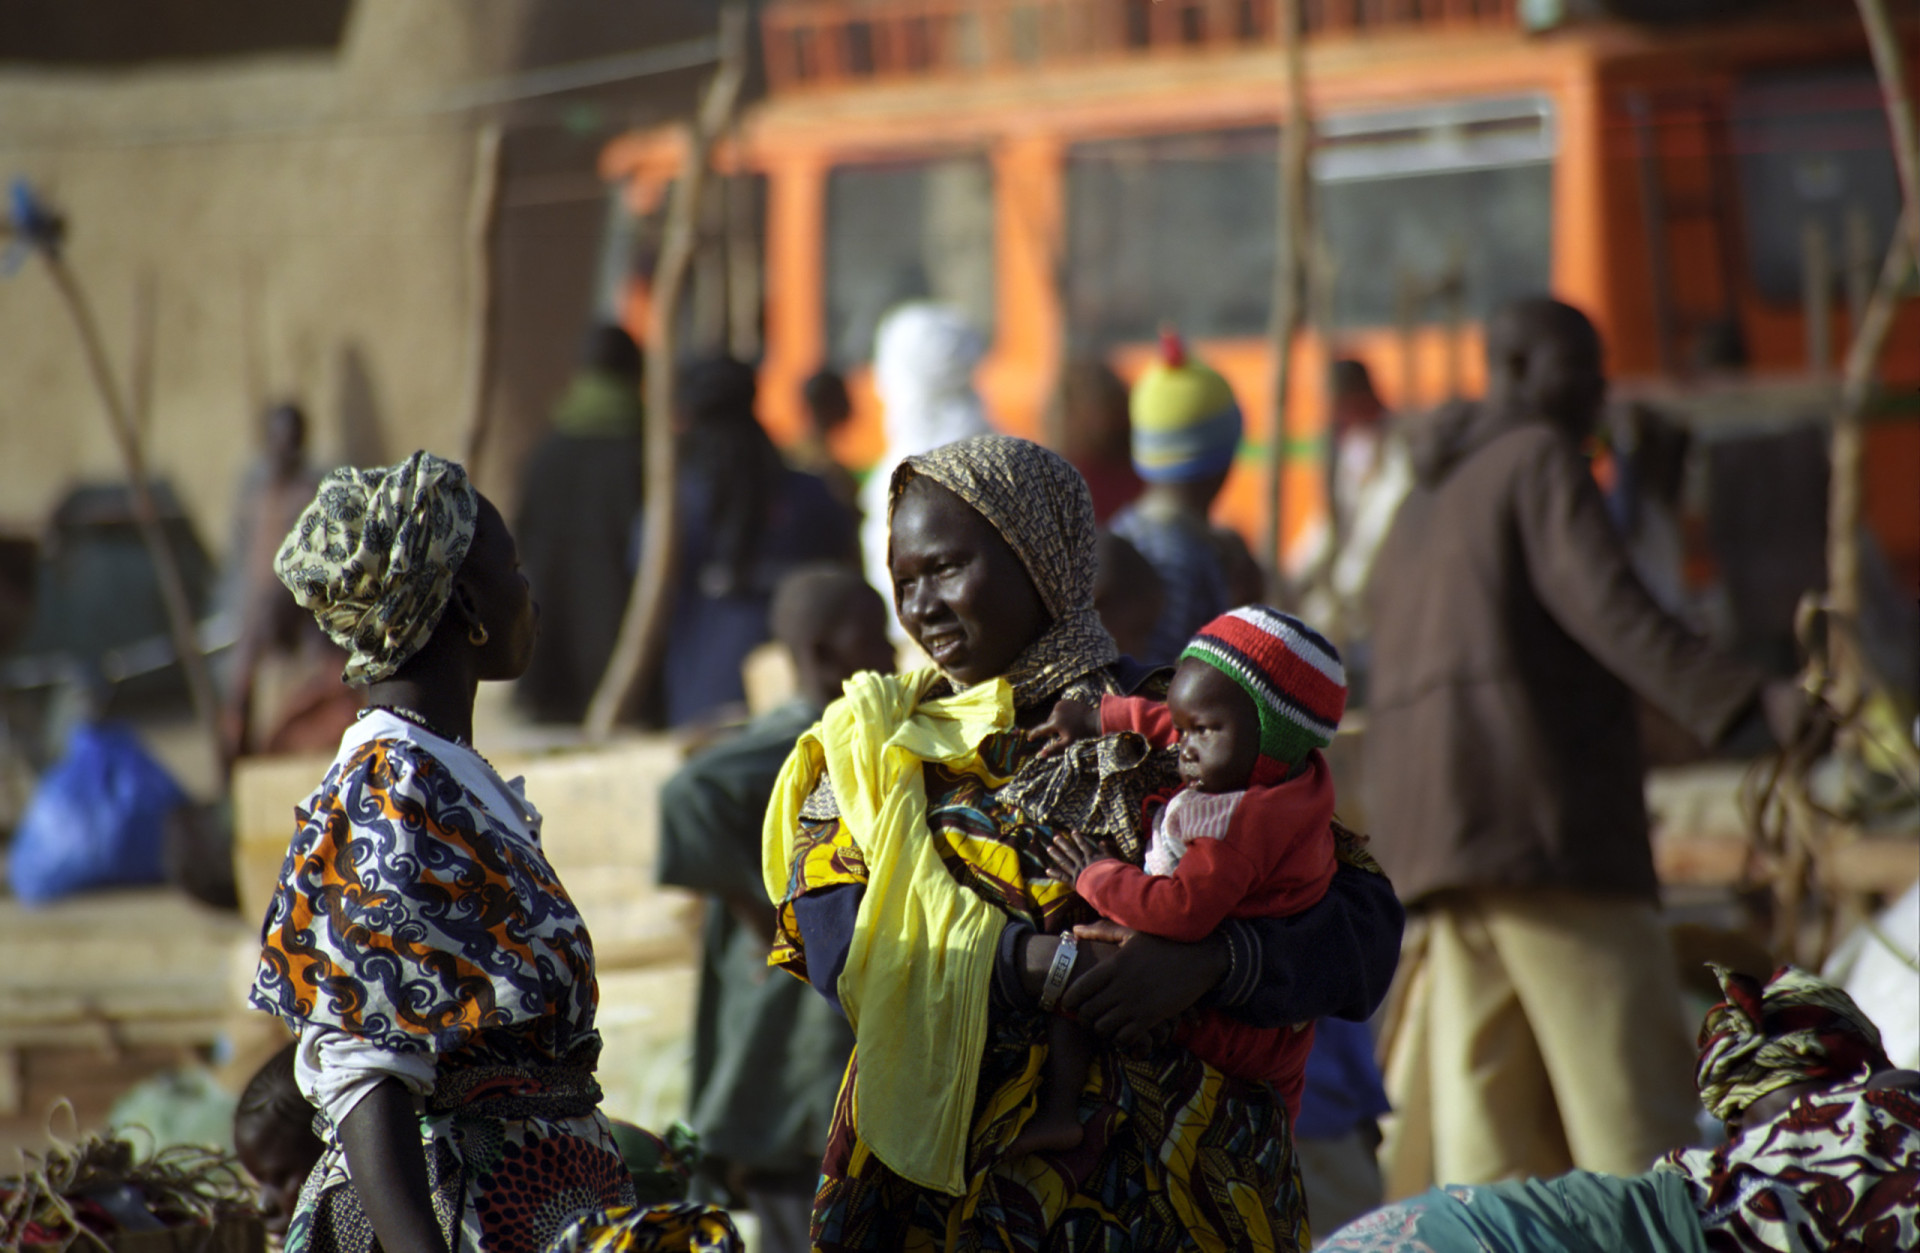 <p>Taux de fécondité moyen par femme : 5,35<br><br>Le taux de fécondité élevé du Tchad, combiné à un nombre important de décès maternels, a rendu le pays particulièrement dangereux pour les femmes.</p><p><a href="https://www.msn.com/fr-fr/community/channel/vid-7xx8mnucu55yw63we9va2gwr7uihbxwc68fxqp25x6tg4ftibpra?cvid=94631541bc0f4f89bfd59158d696ad7e">Suivez-nous et accédez tous les jours à du contenu exclusif</a></p>